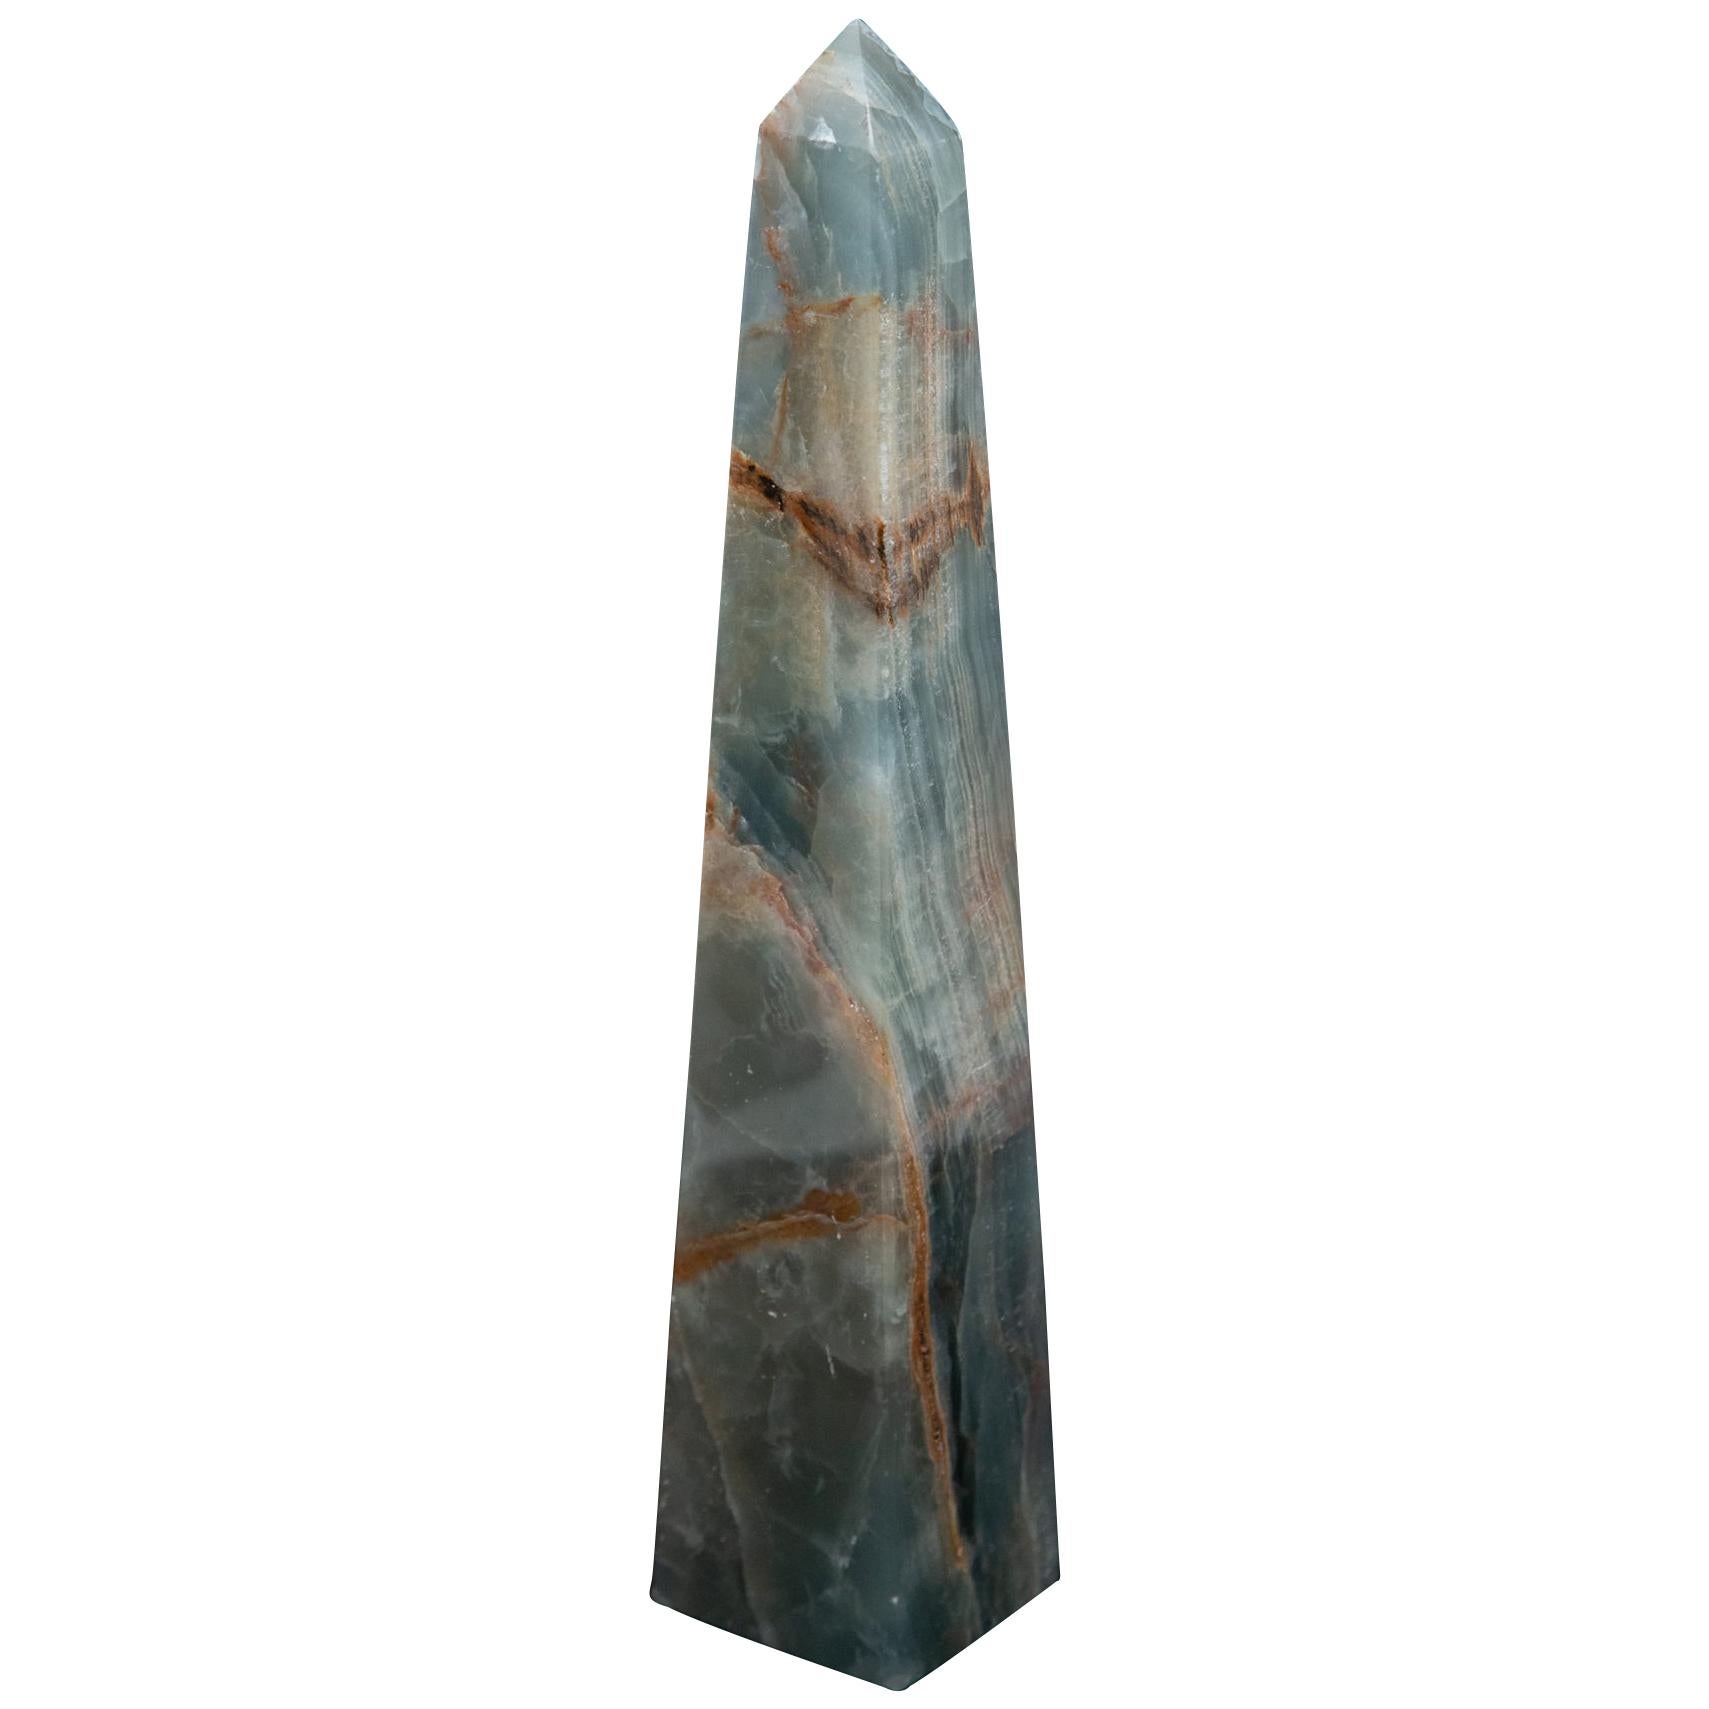 Blue Onyx Hand Carved Obelisk